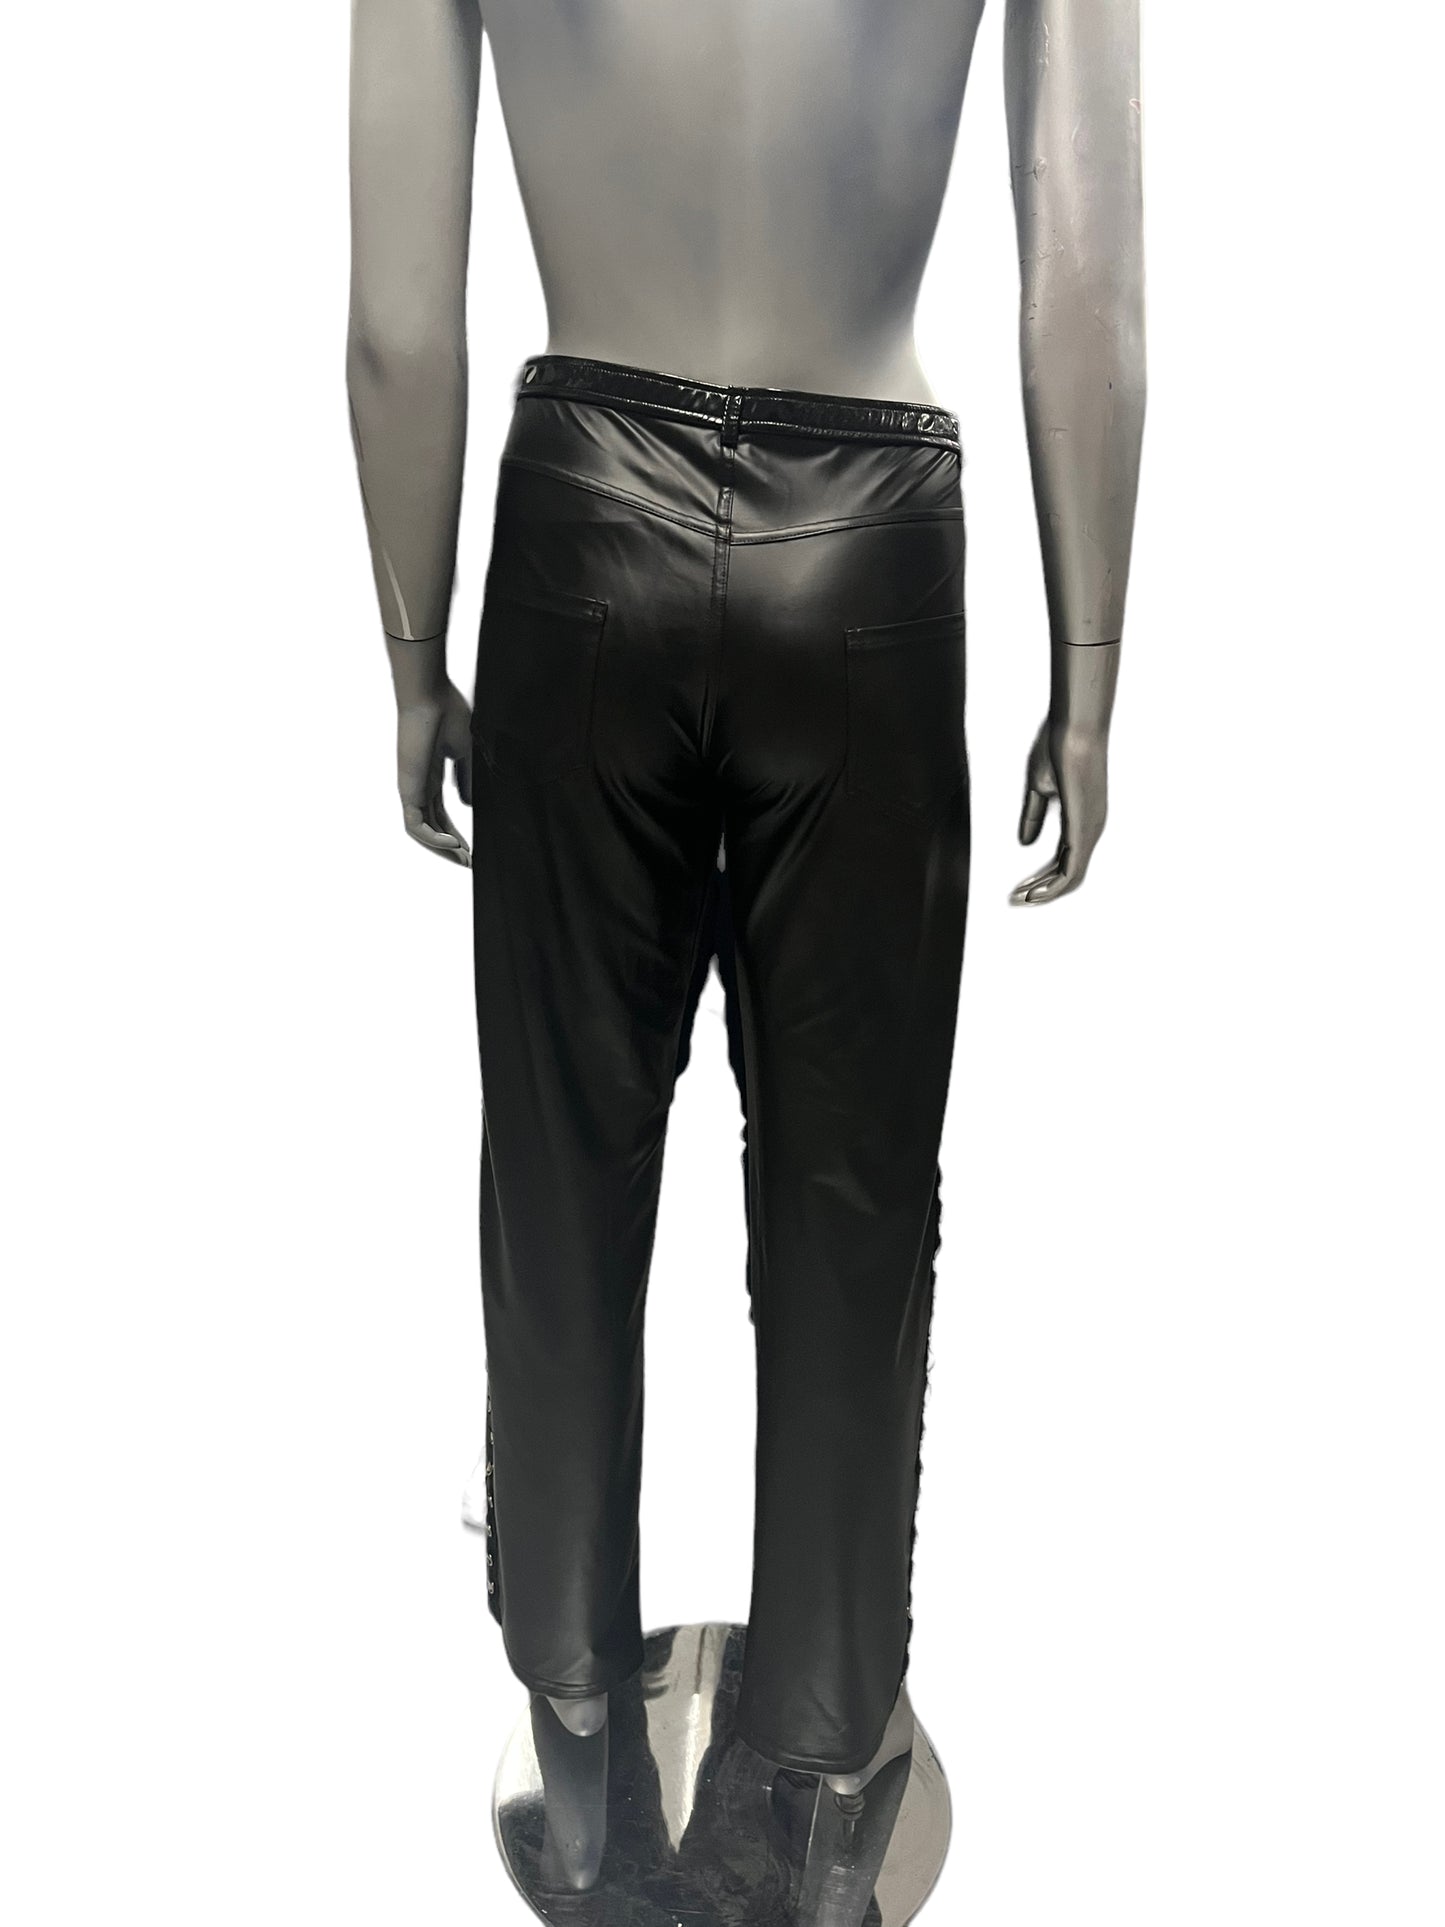 Noir - LL68 - Black Pants - Size XXL